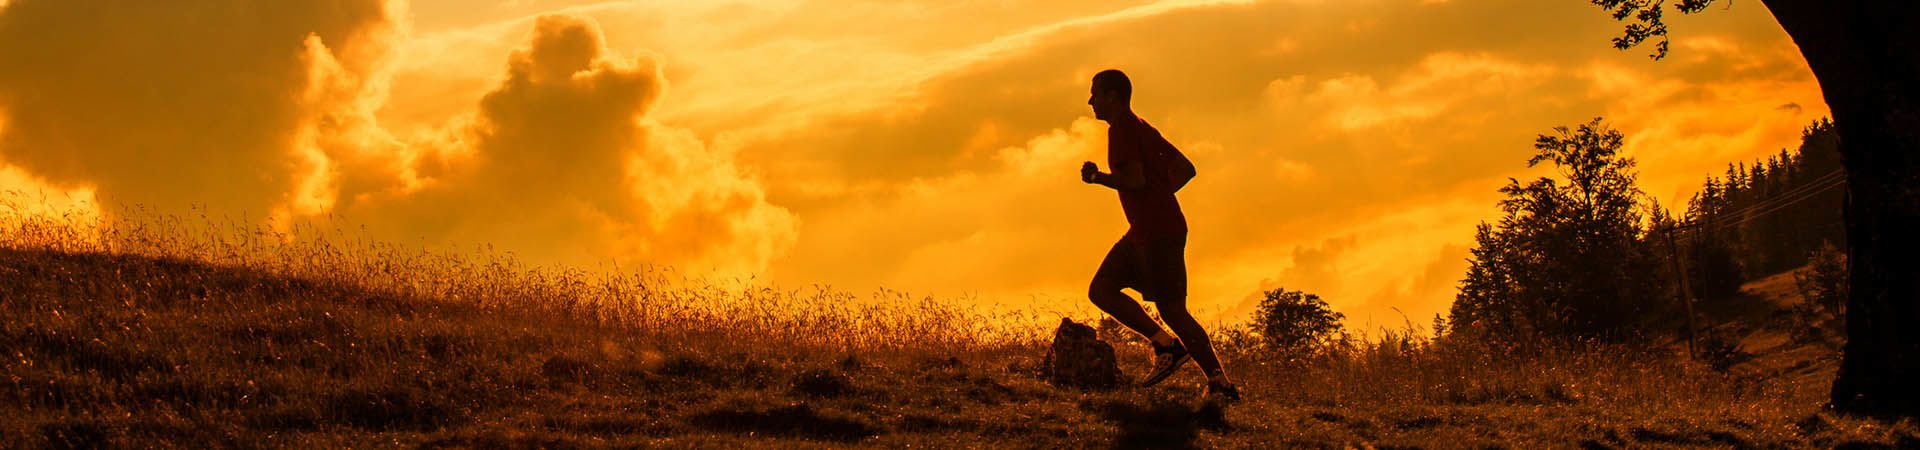 Jogging y running: cómo empezar a correr evitando lesiones y sobrecargas.